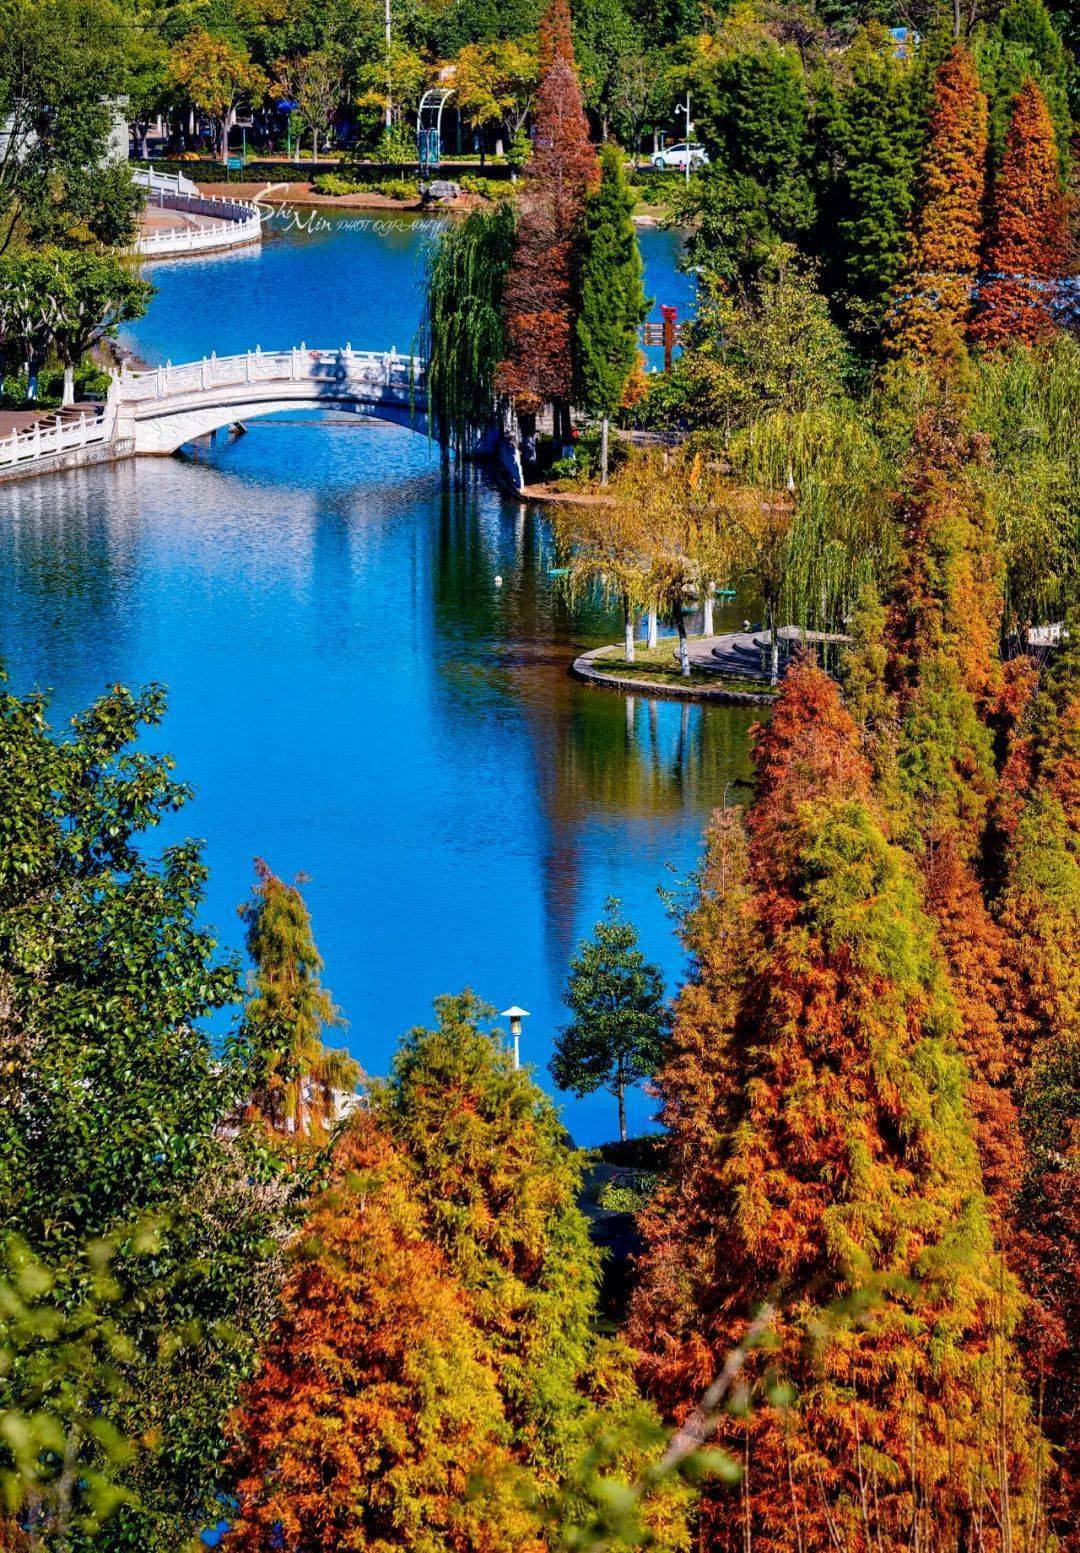 位于易门县城以西的龙泉公园生态旅游景区,与县城相接,是一个集湖